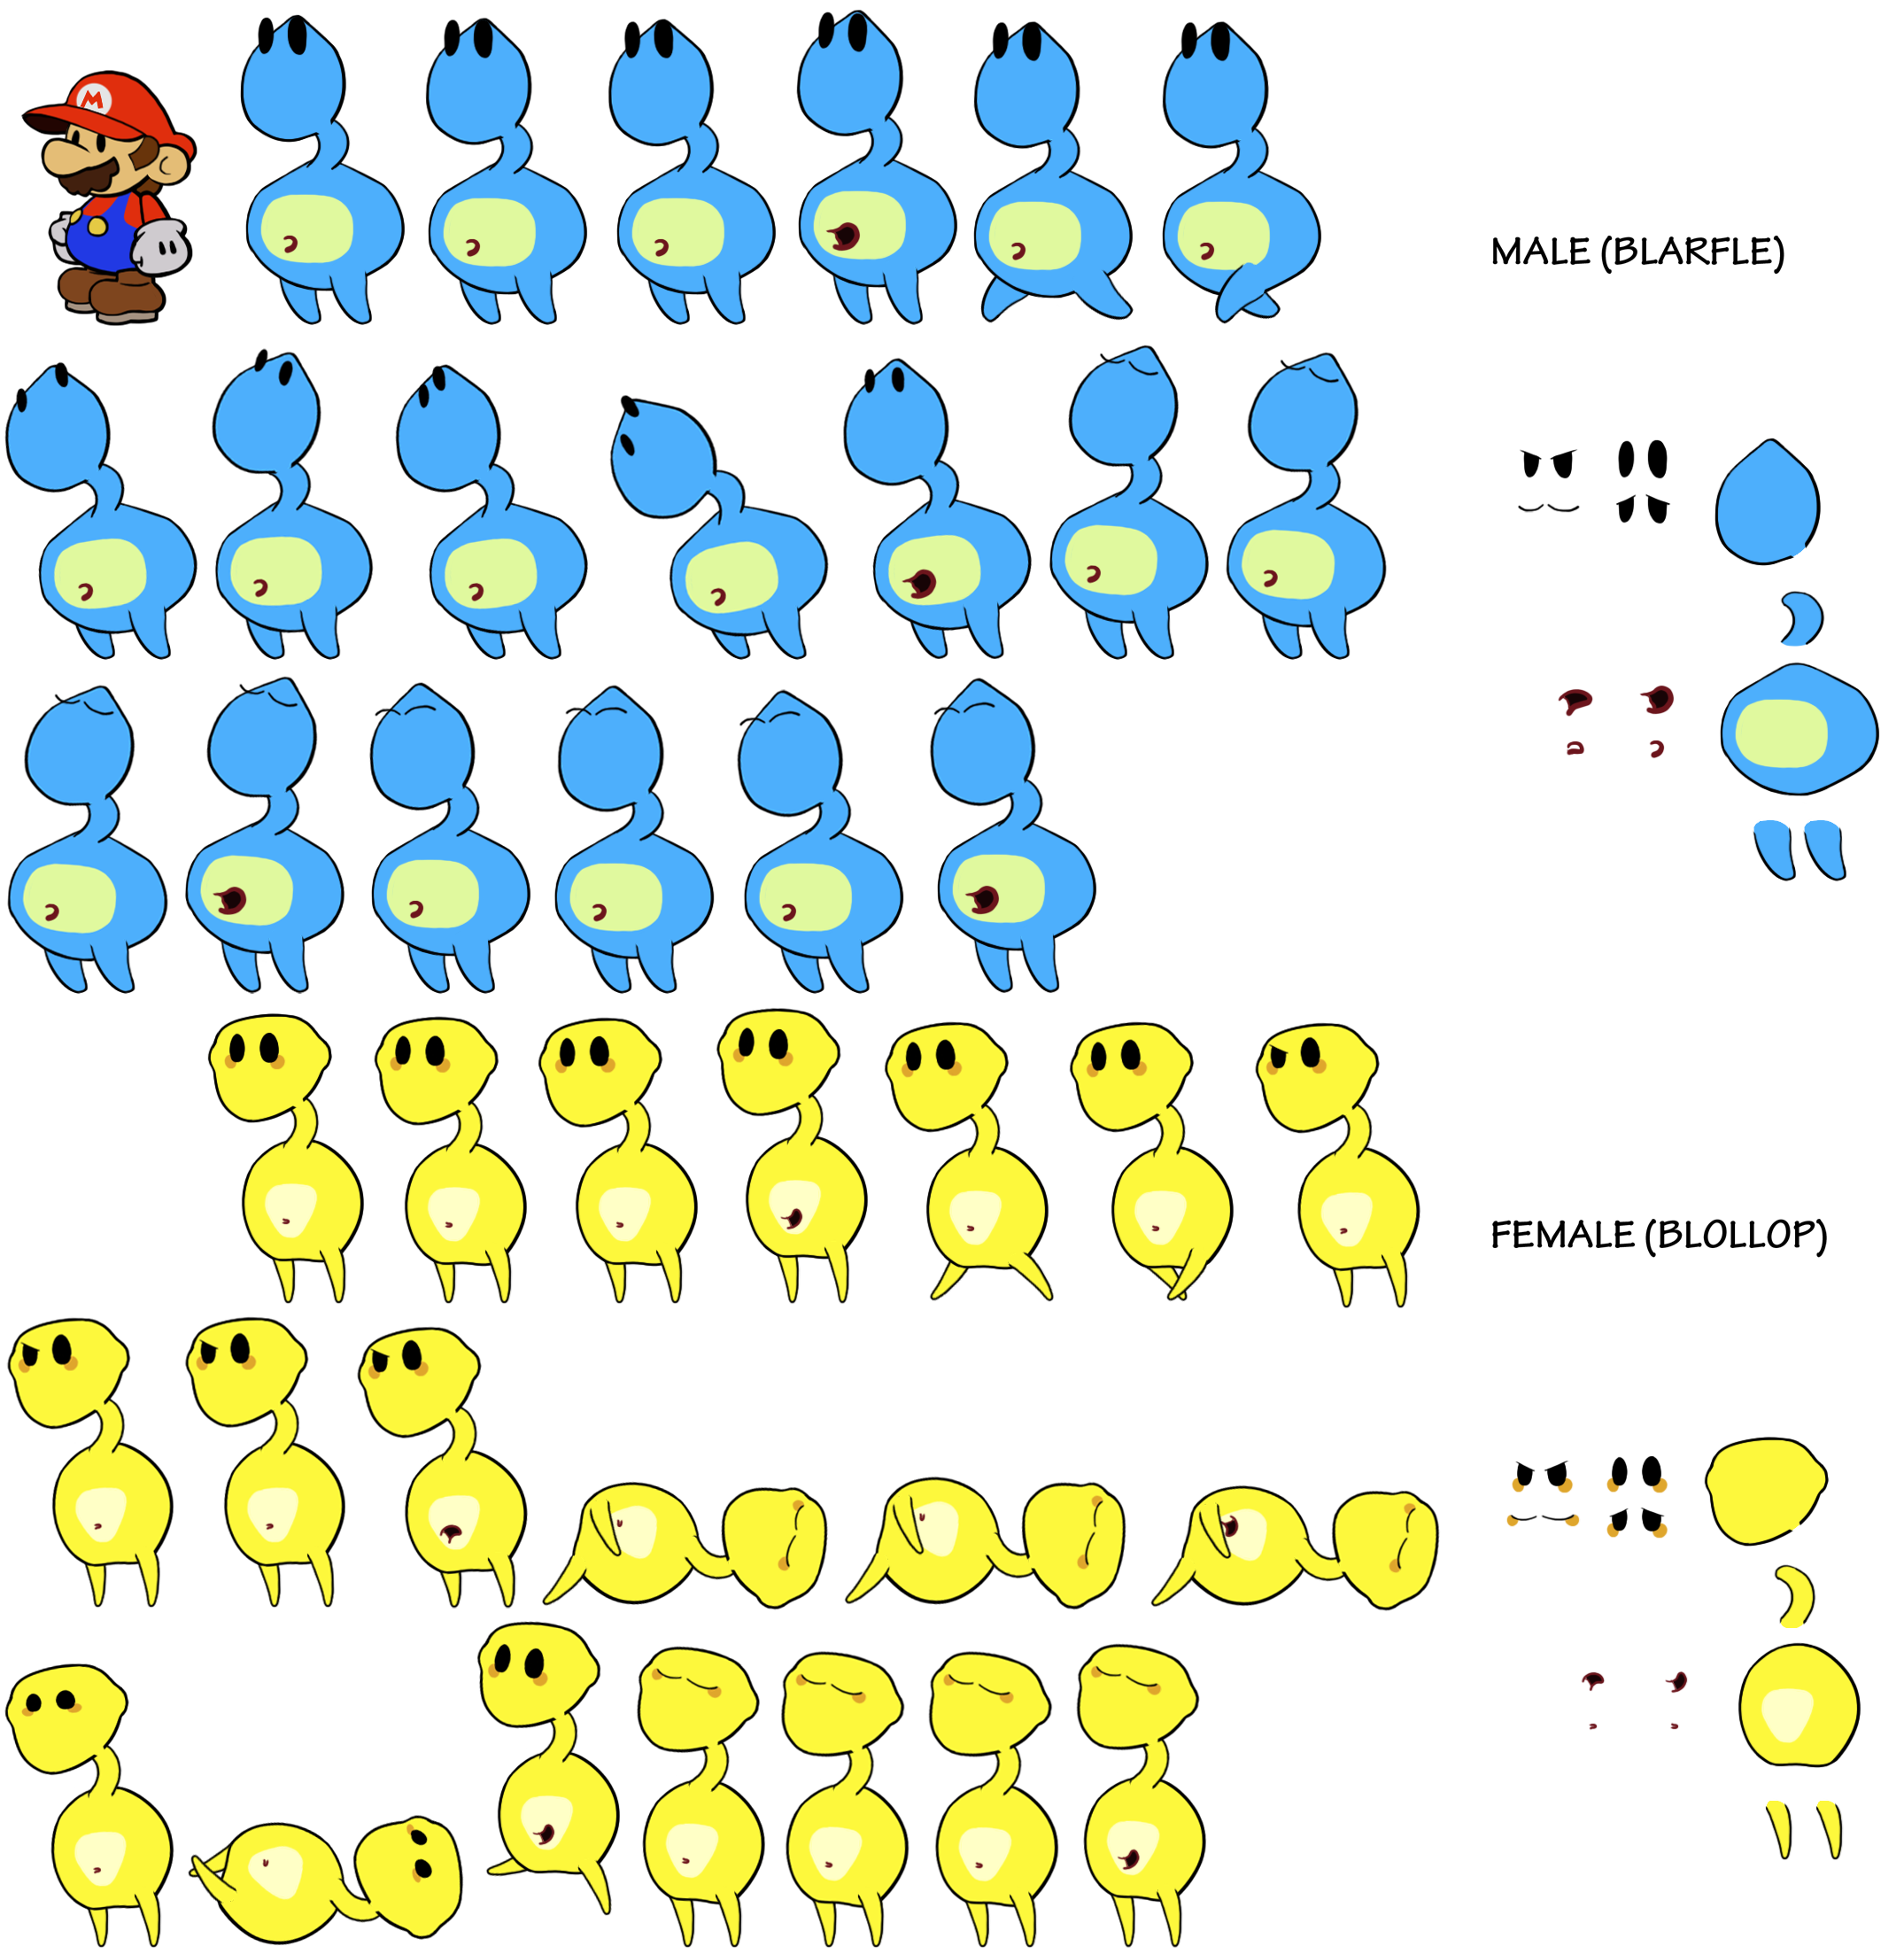 Blobules (Paper Mario-Style)